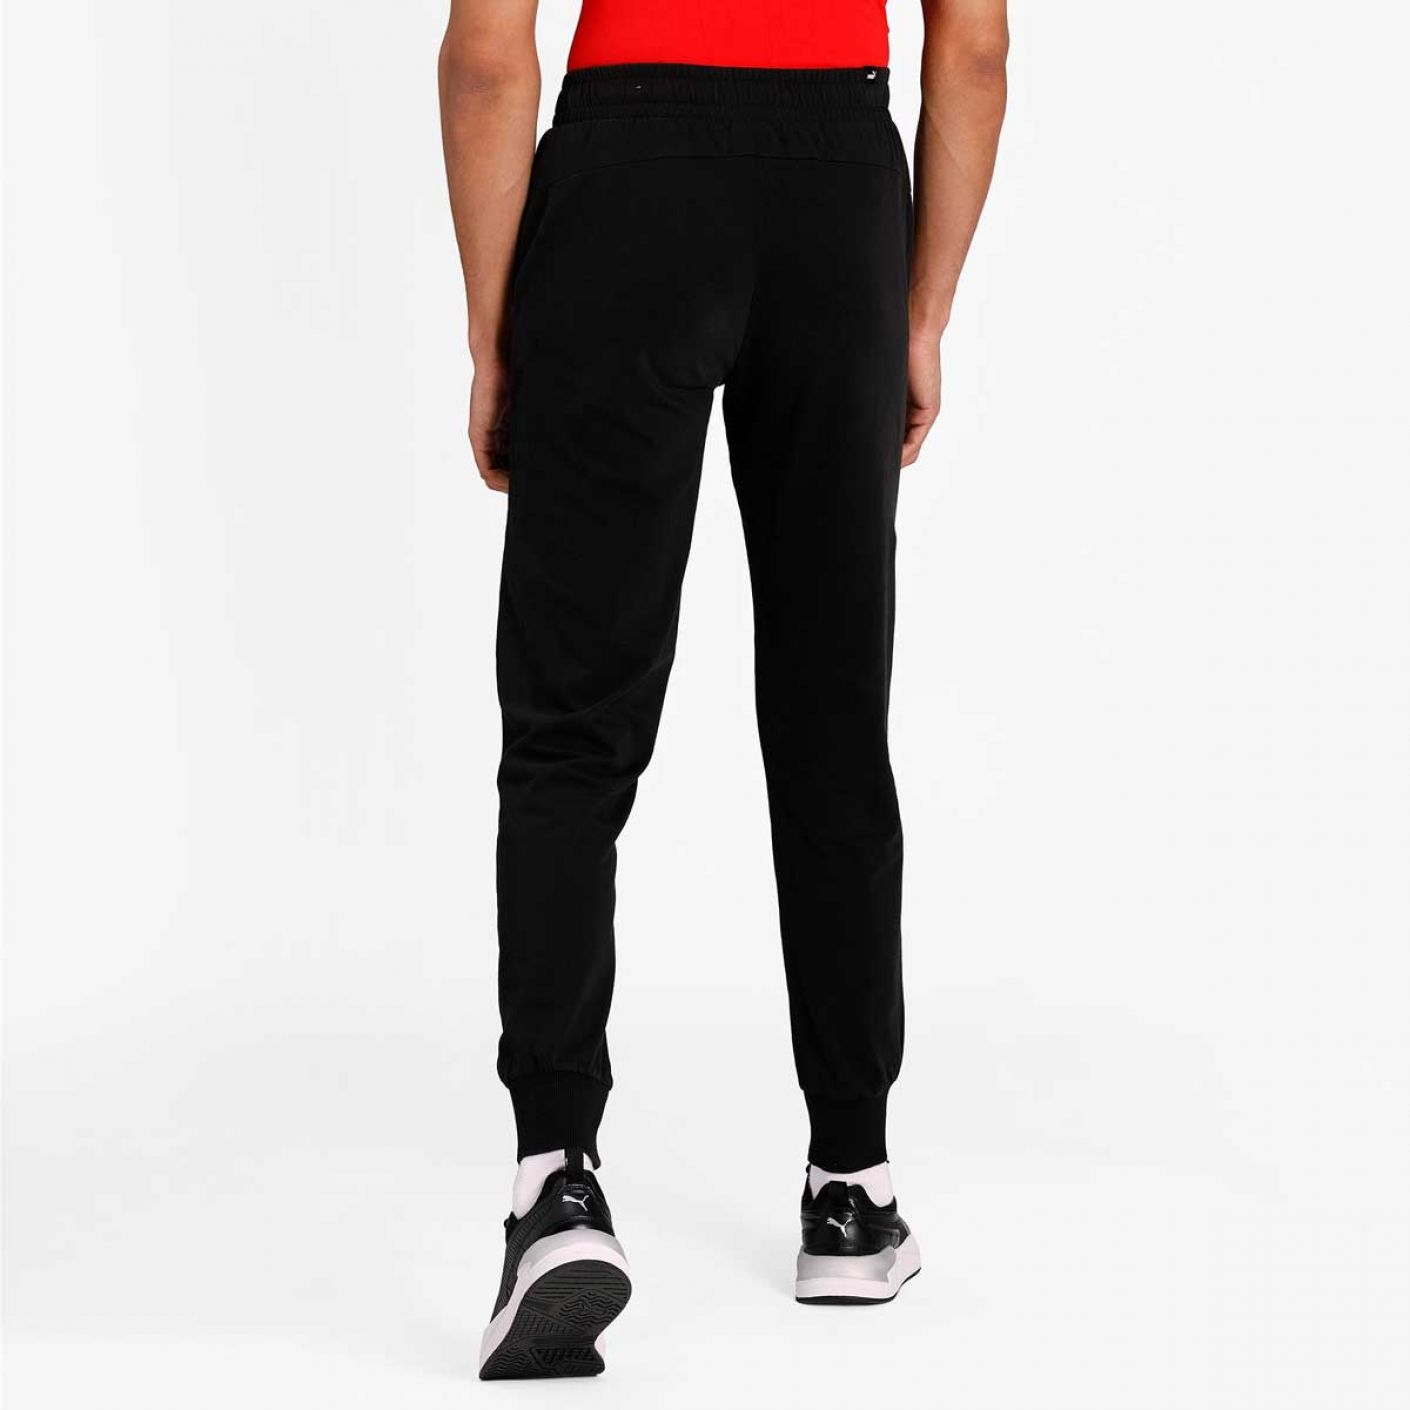 Puma Essentials Jersey Black Pants for Men